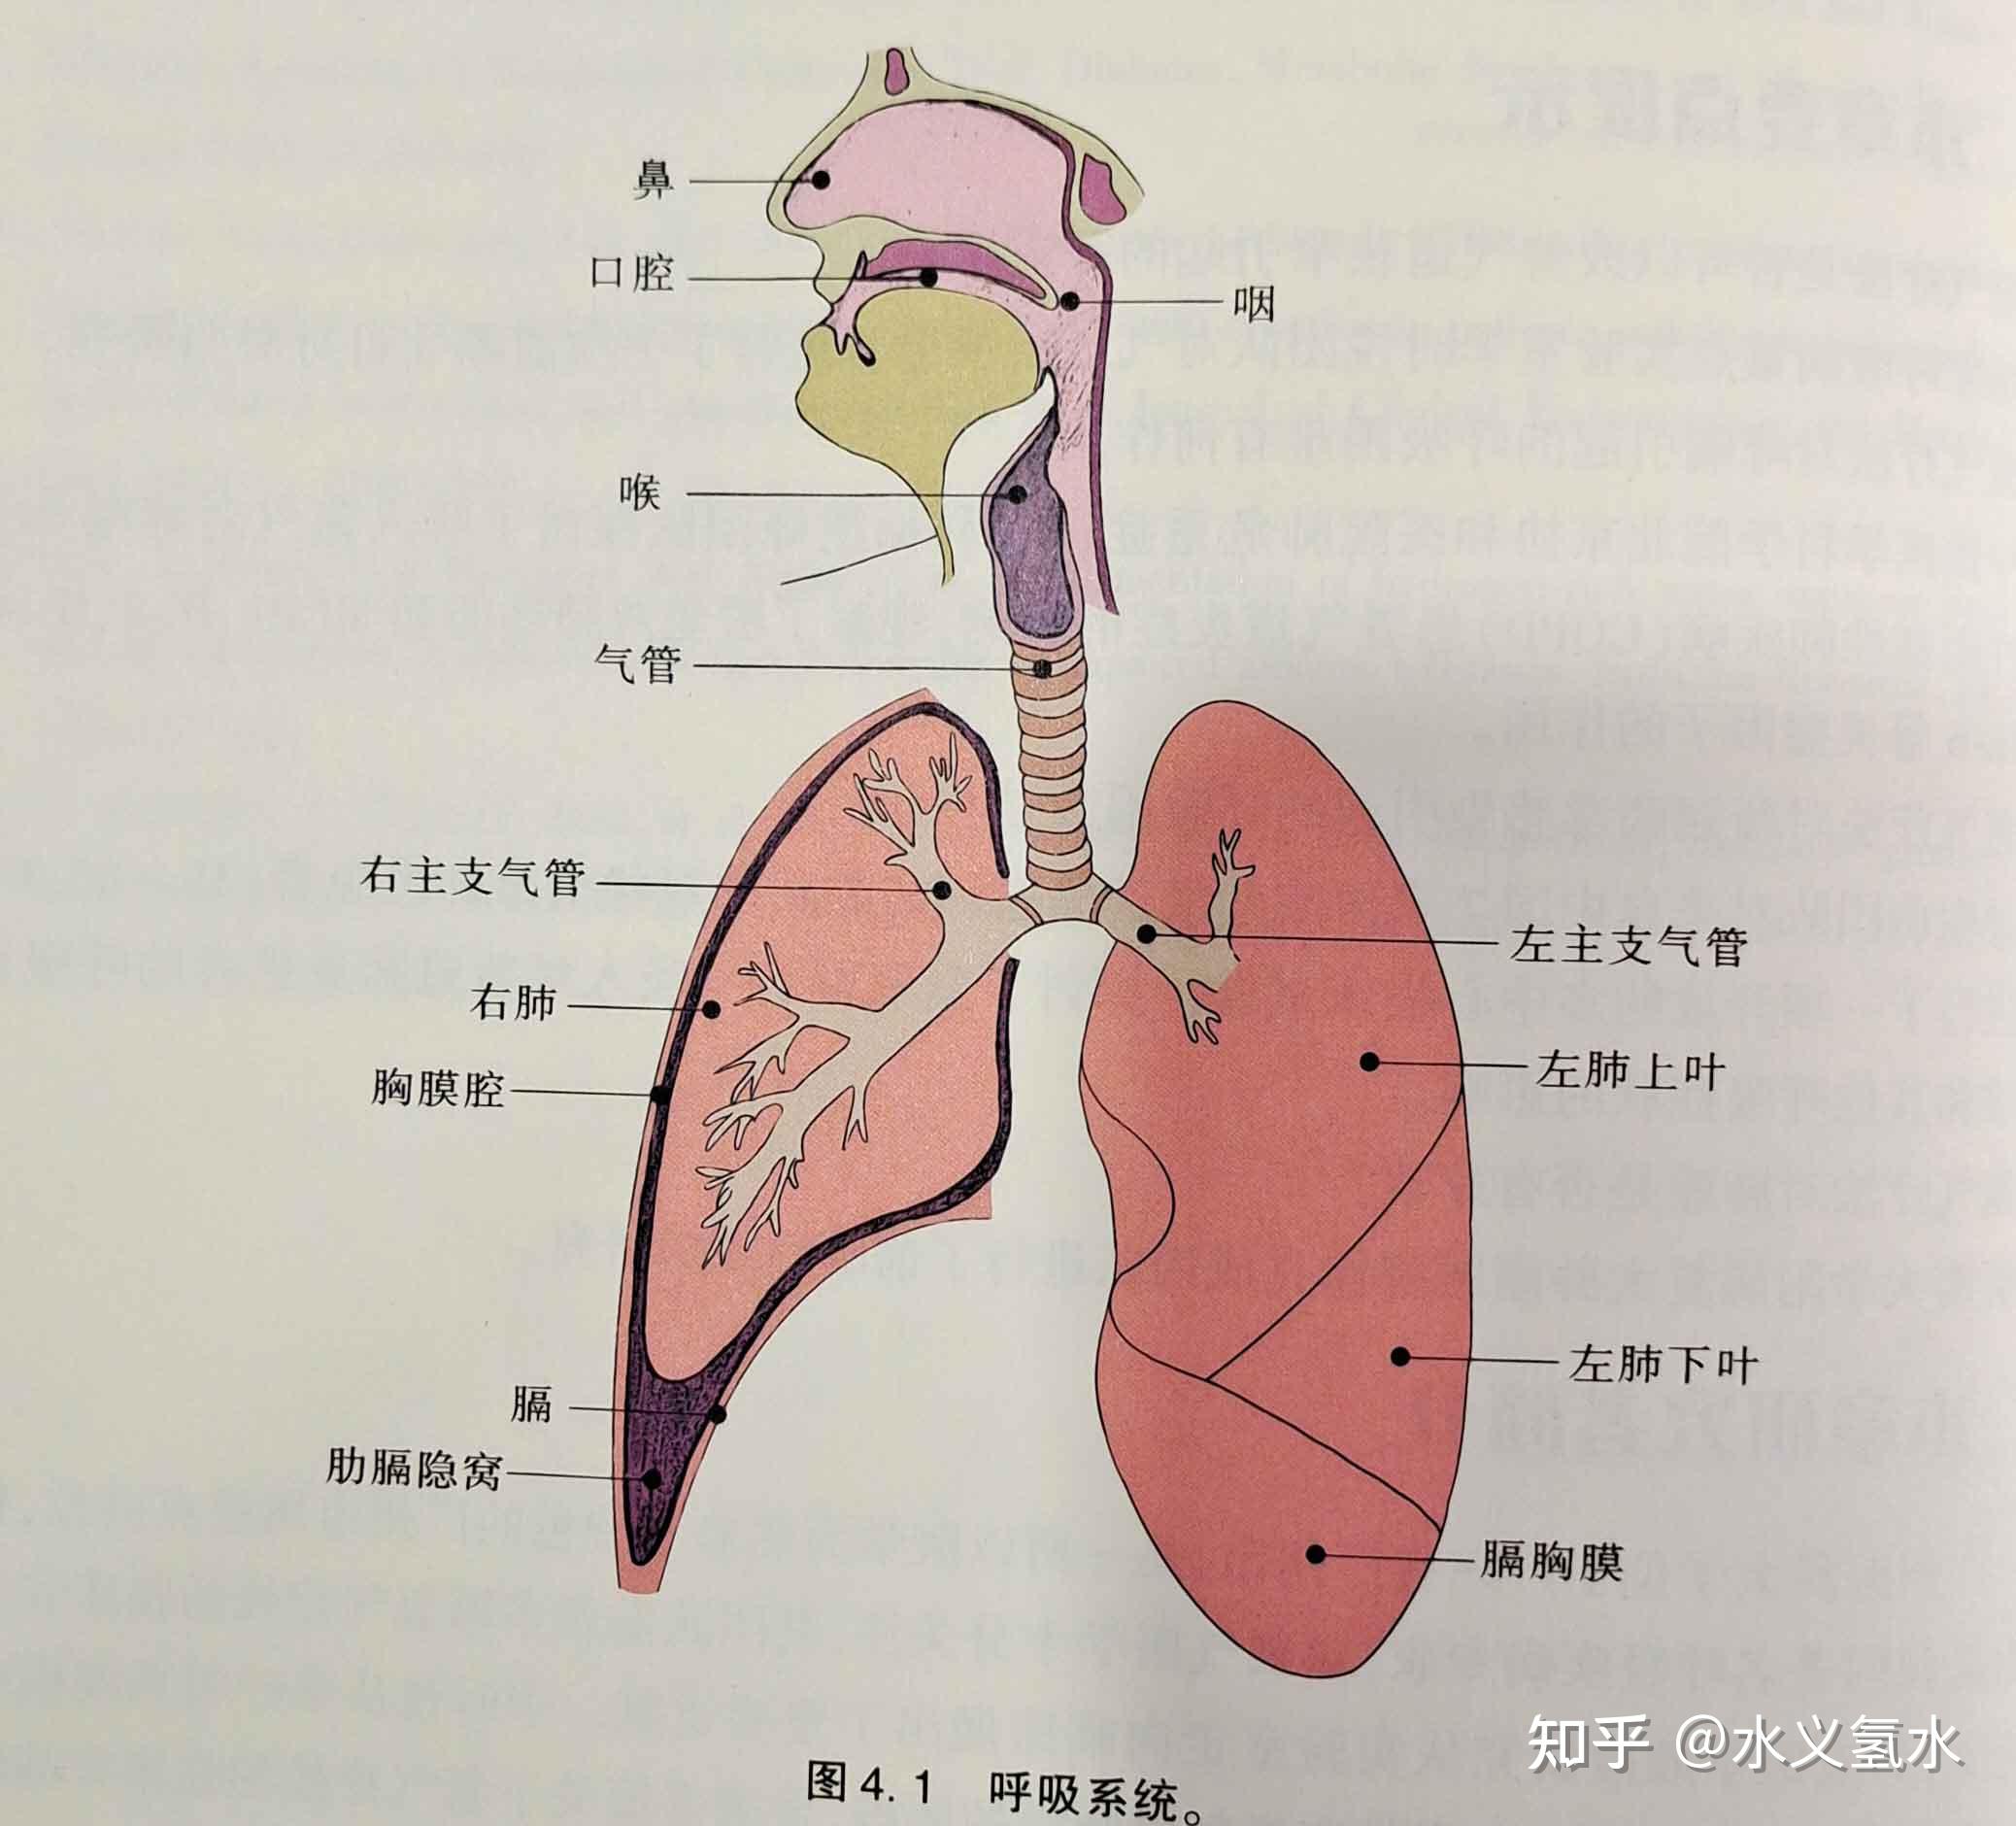 肺门在什么位置图片